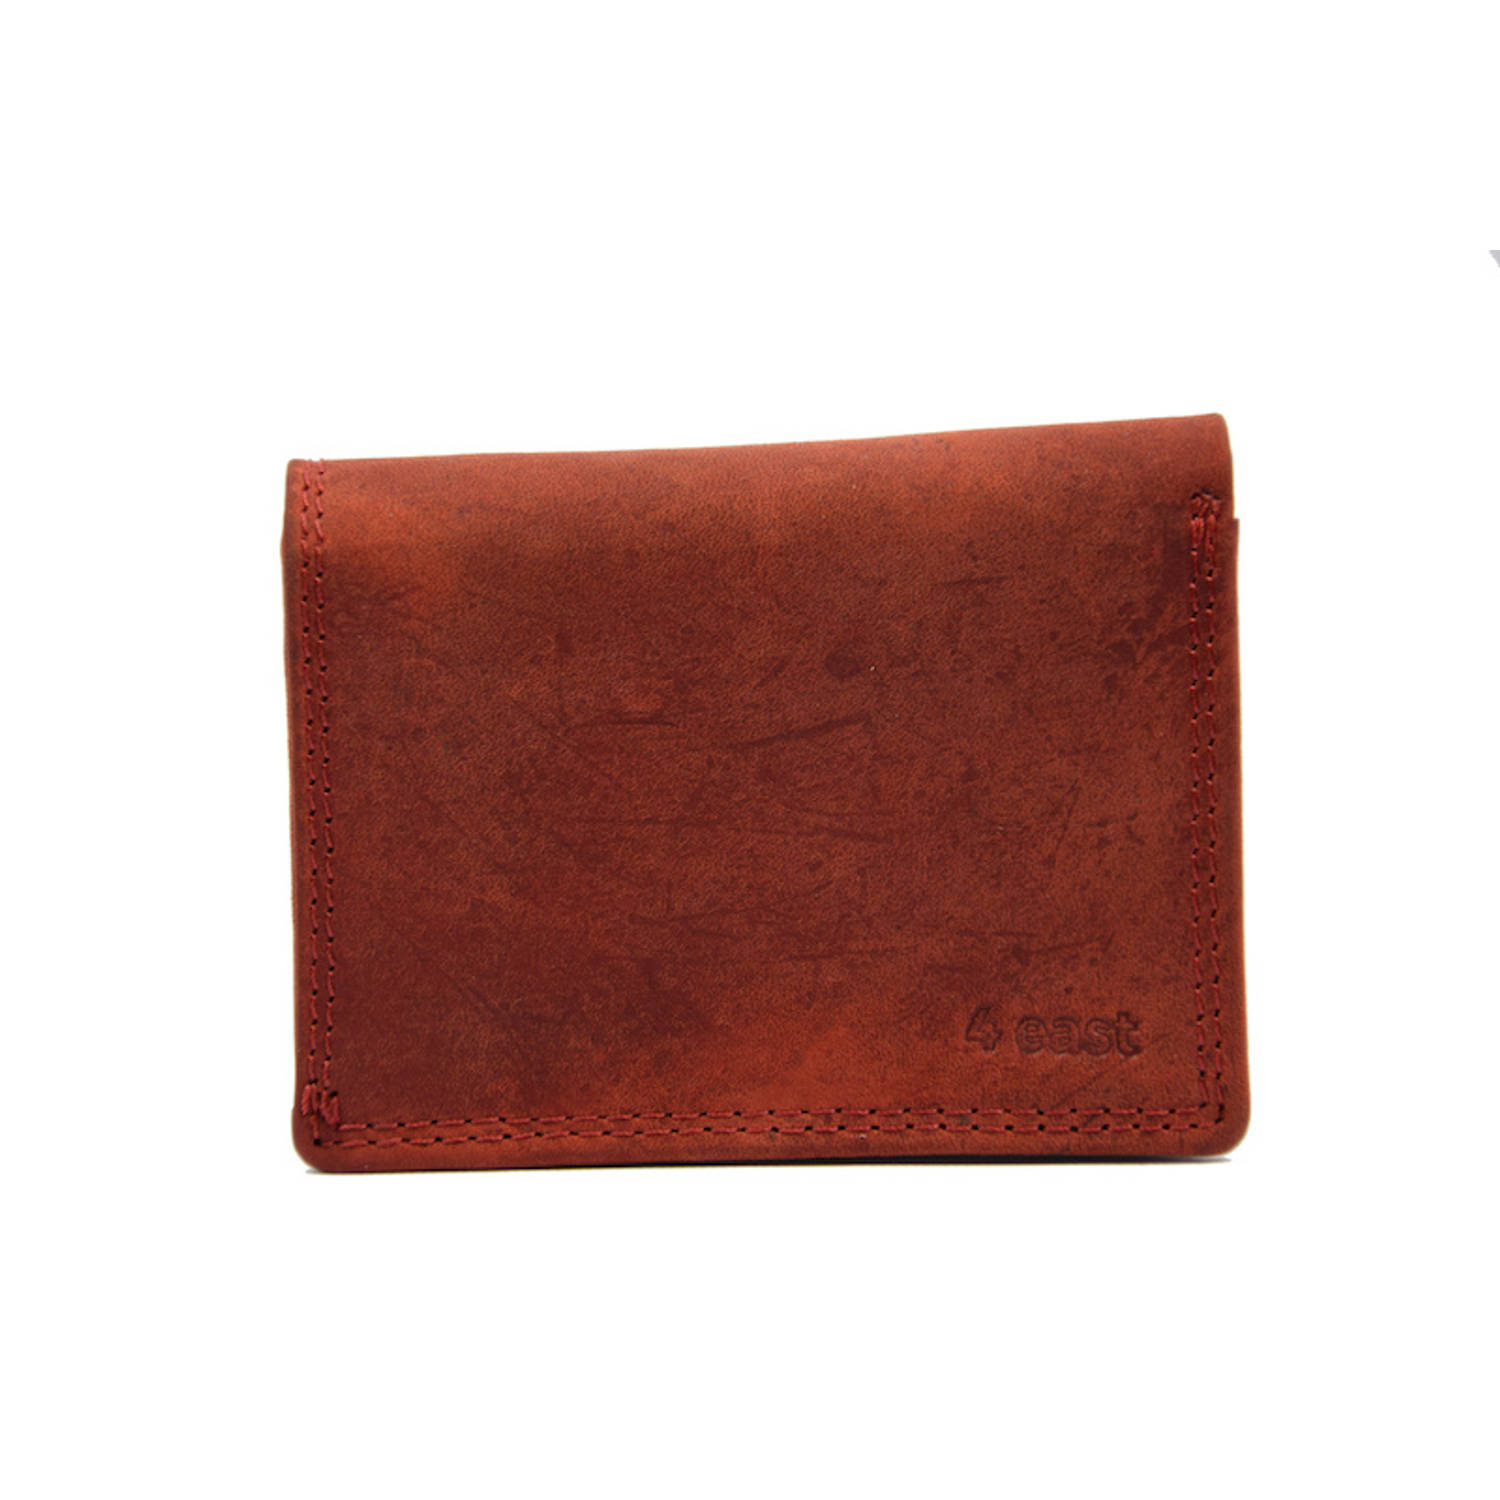 Kleine portemonnee van buffelleer, met kleine geld- zeer compact - RFID - vakantie portemonnee - Mini portemonnee. Rood